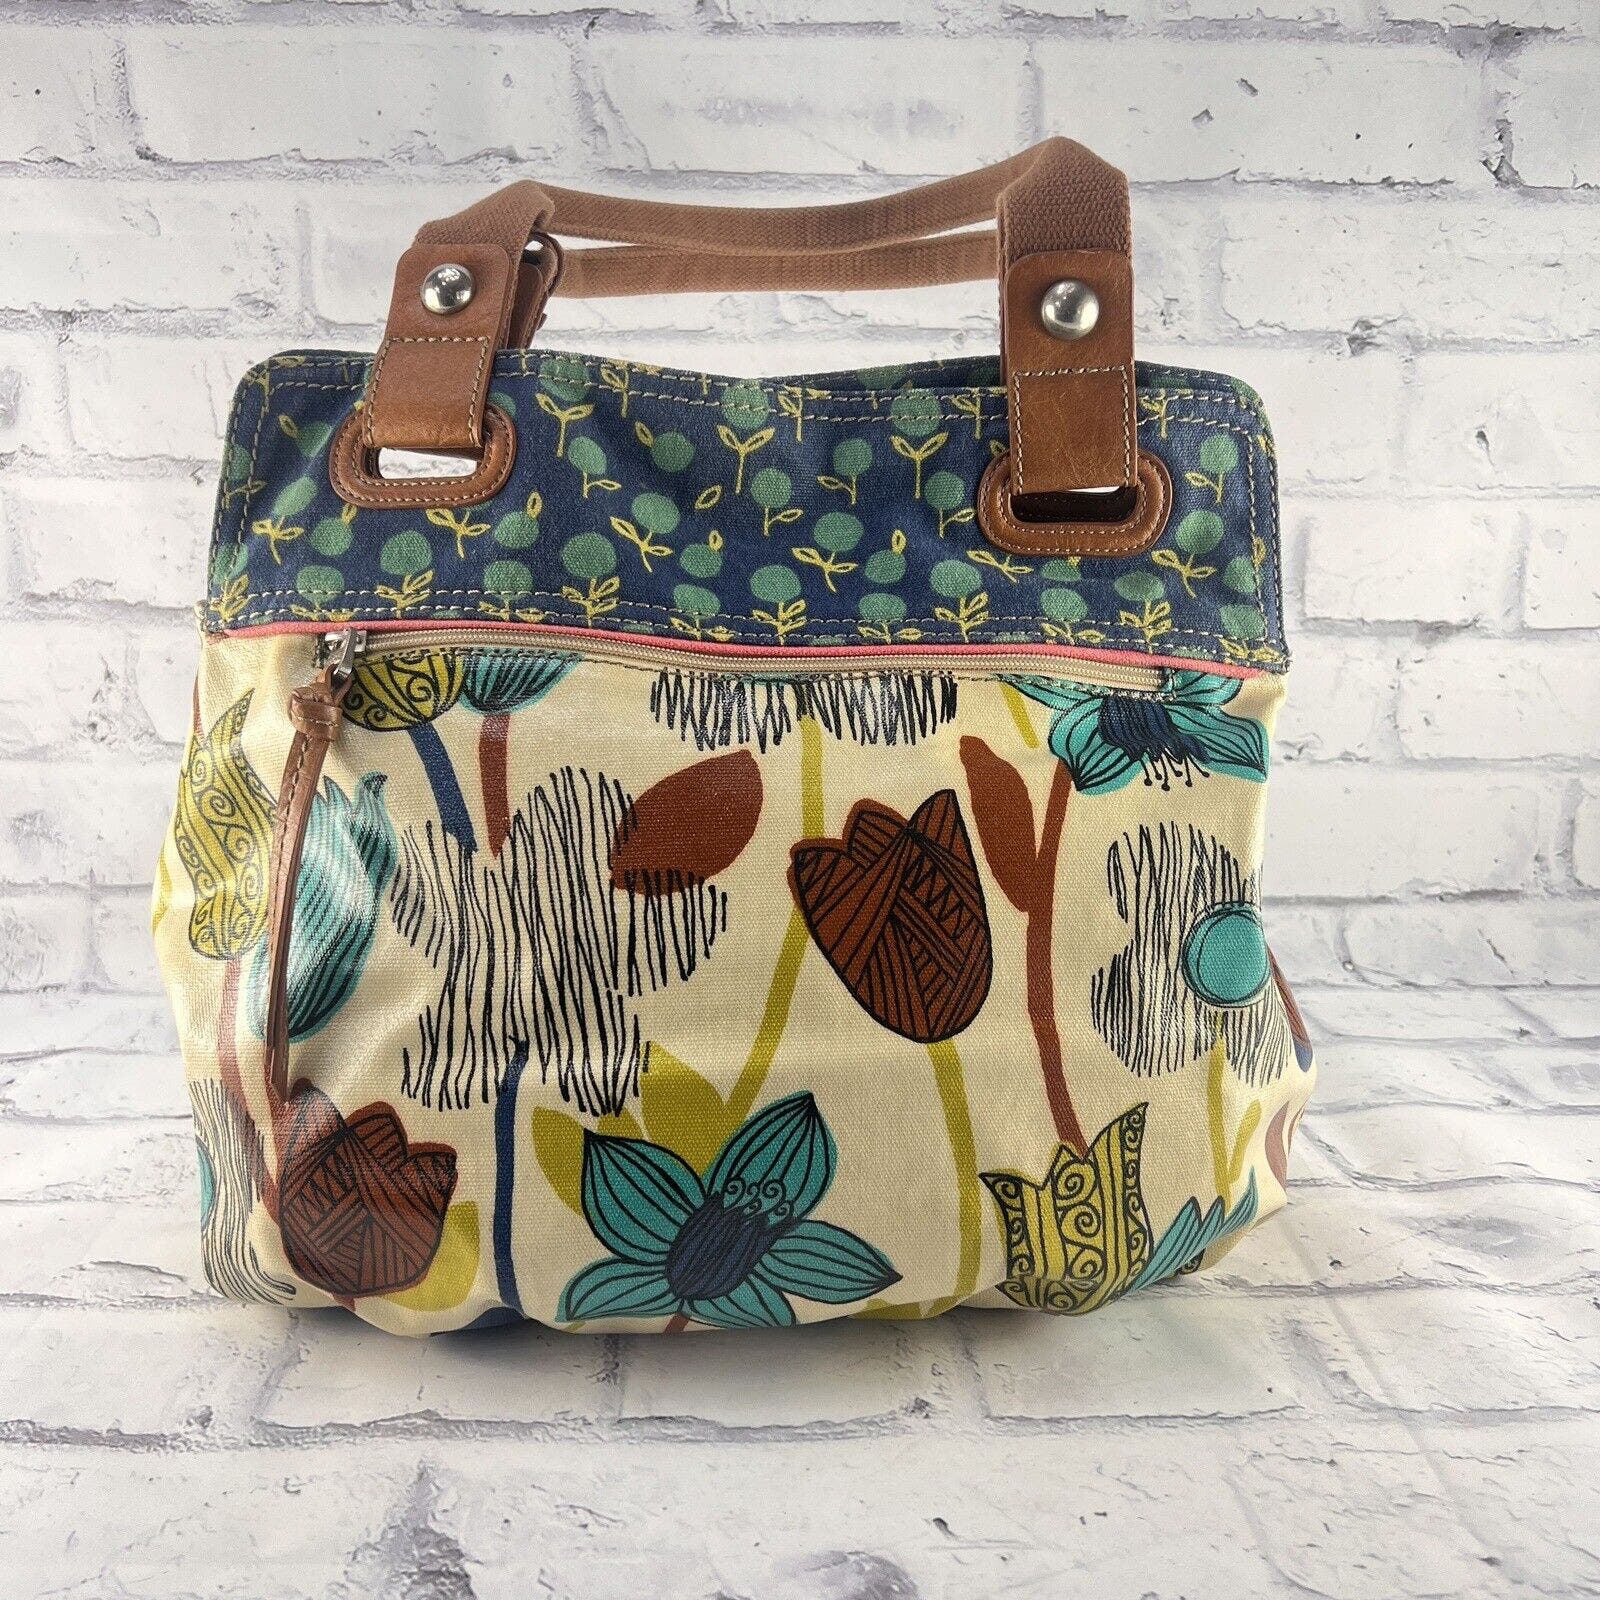 Fossil Key-Per Coated Canvas Tote Handbag Floral Pattern Large Shoulder Bag